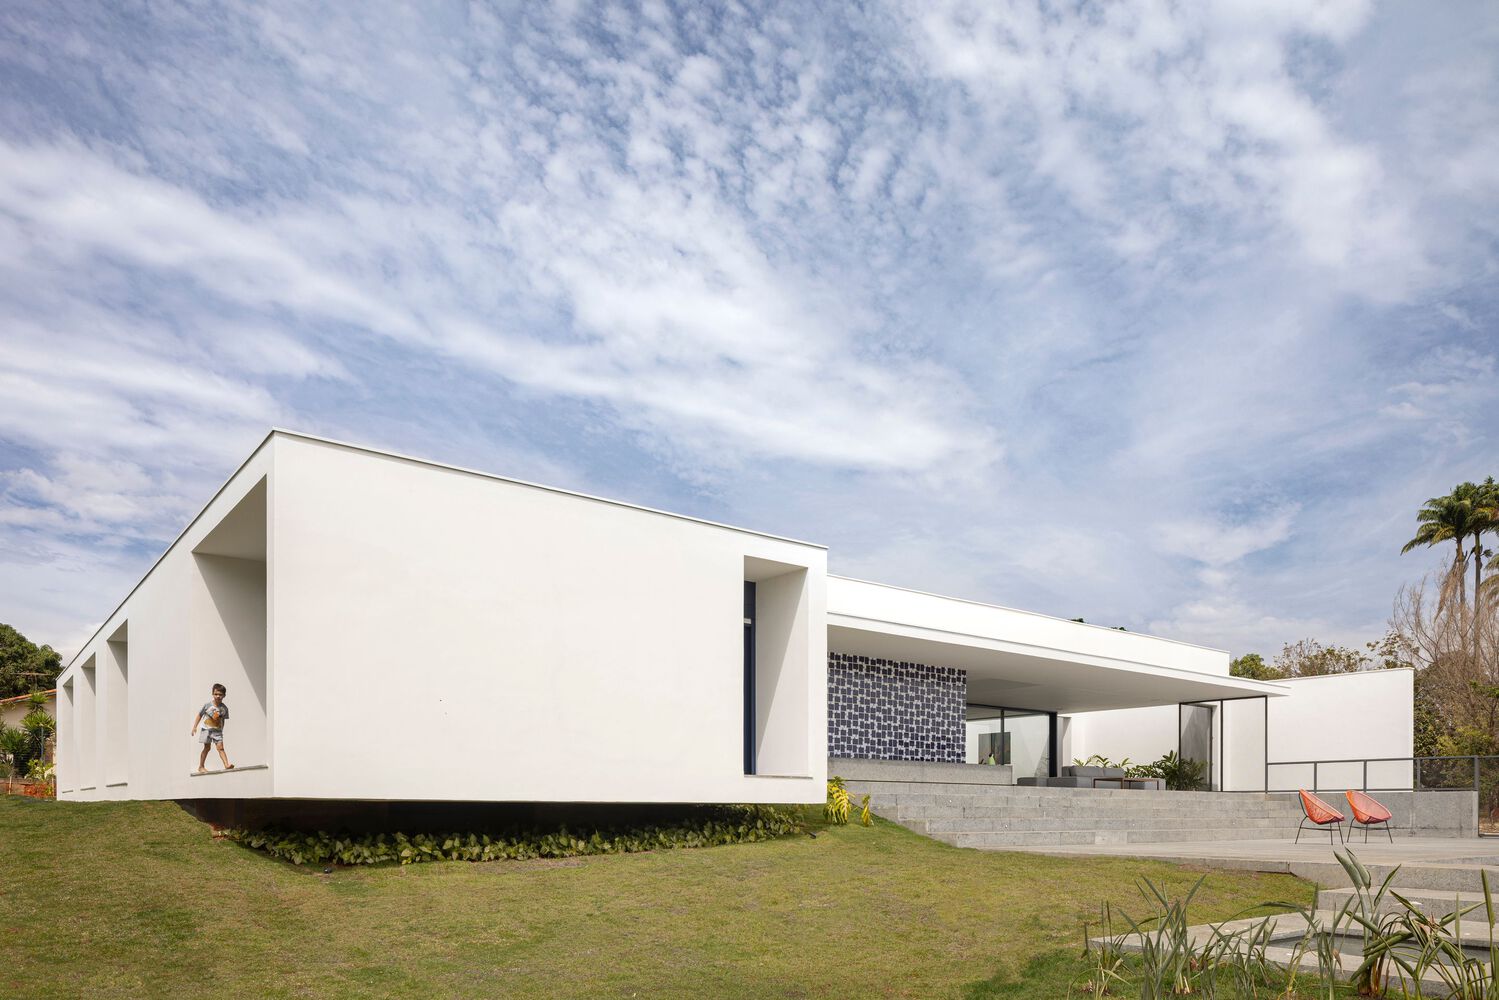 別墅設計,住宅設計案例,BLOCO Arquitetos,巴西,國外別墅設計案例,600㎡,景觀別墅,畫廊住宅